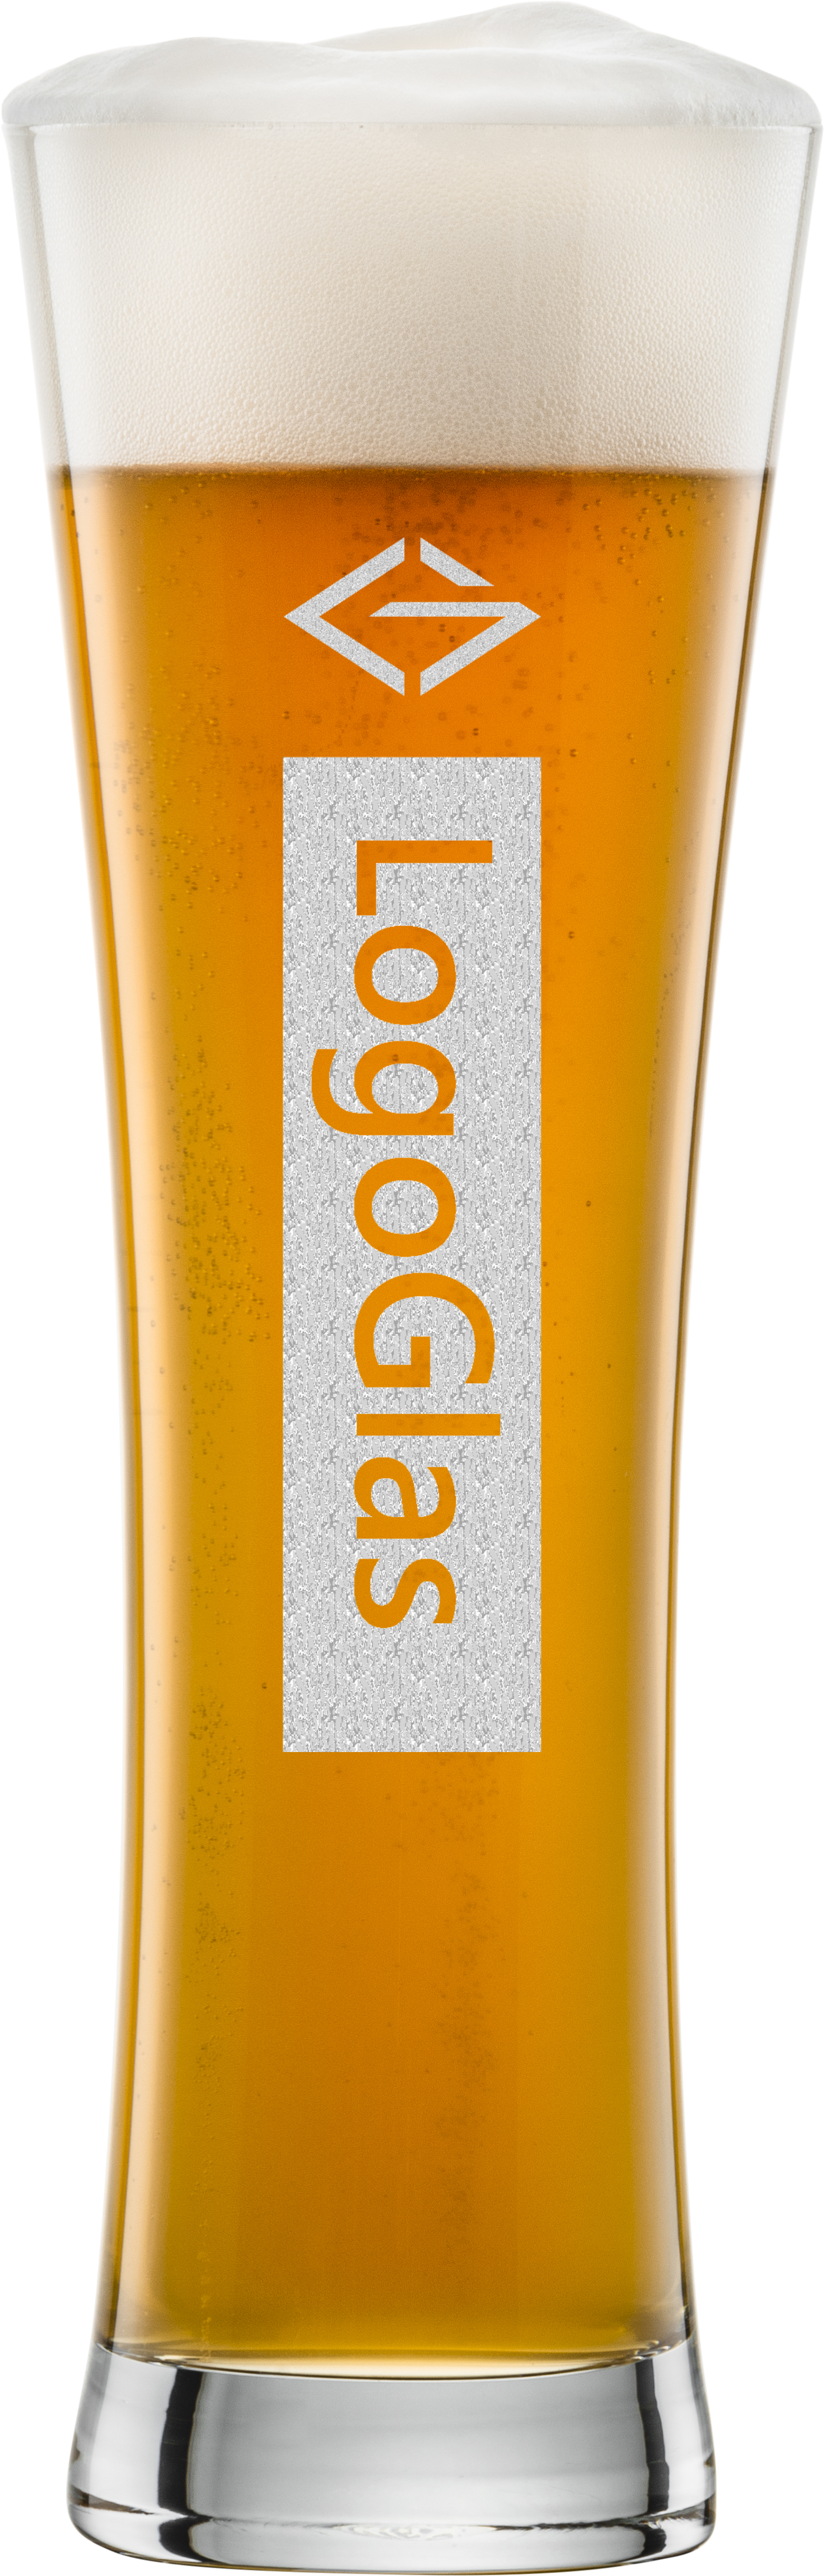 bierglas mit logo gravur